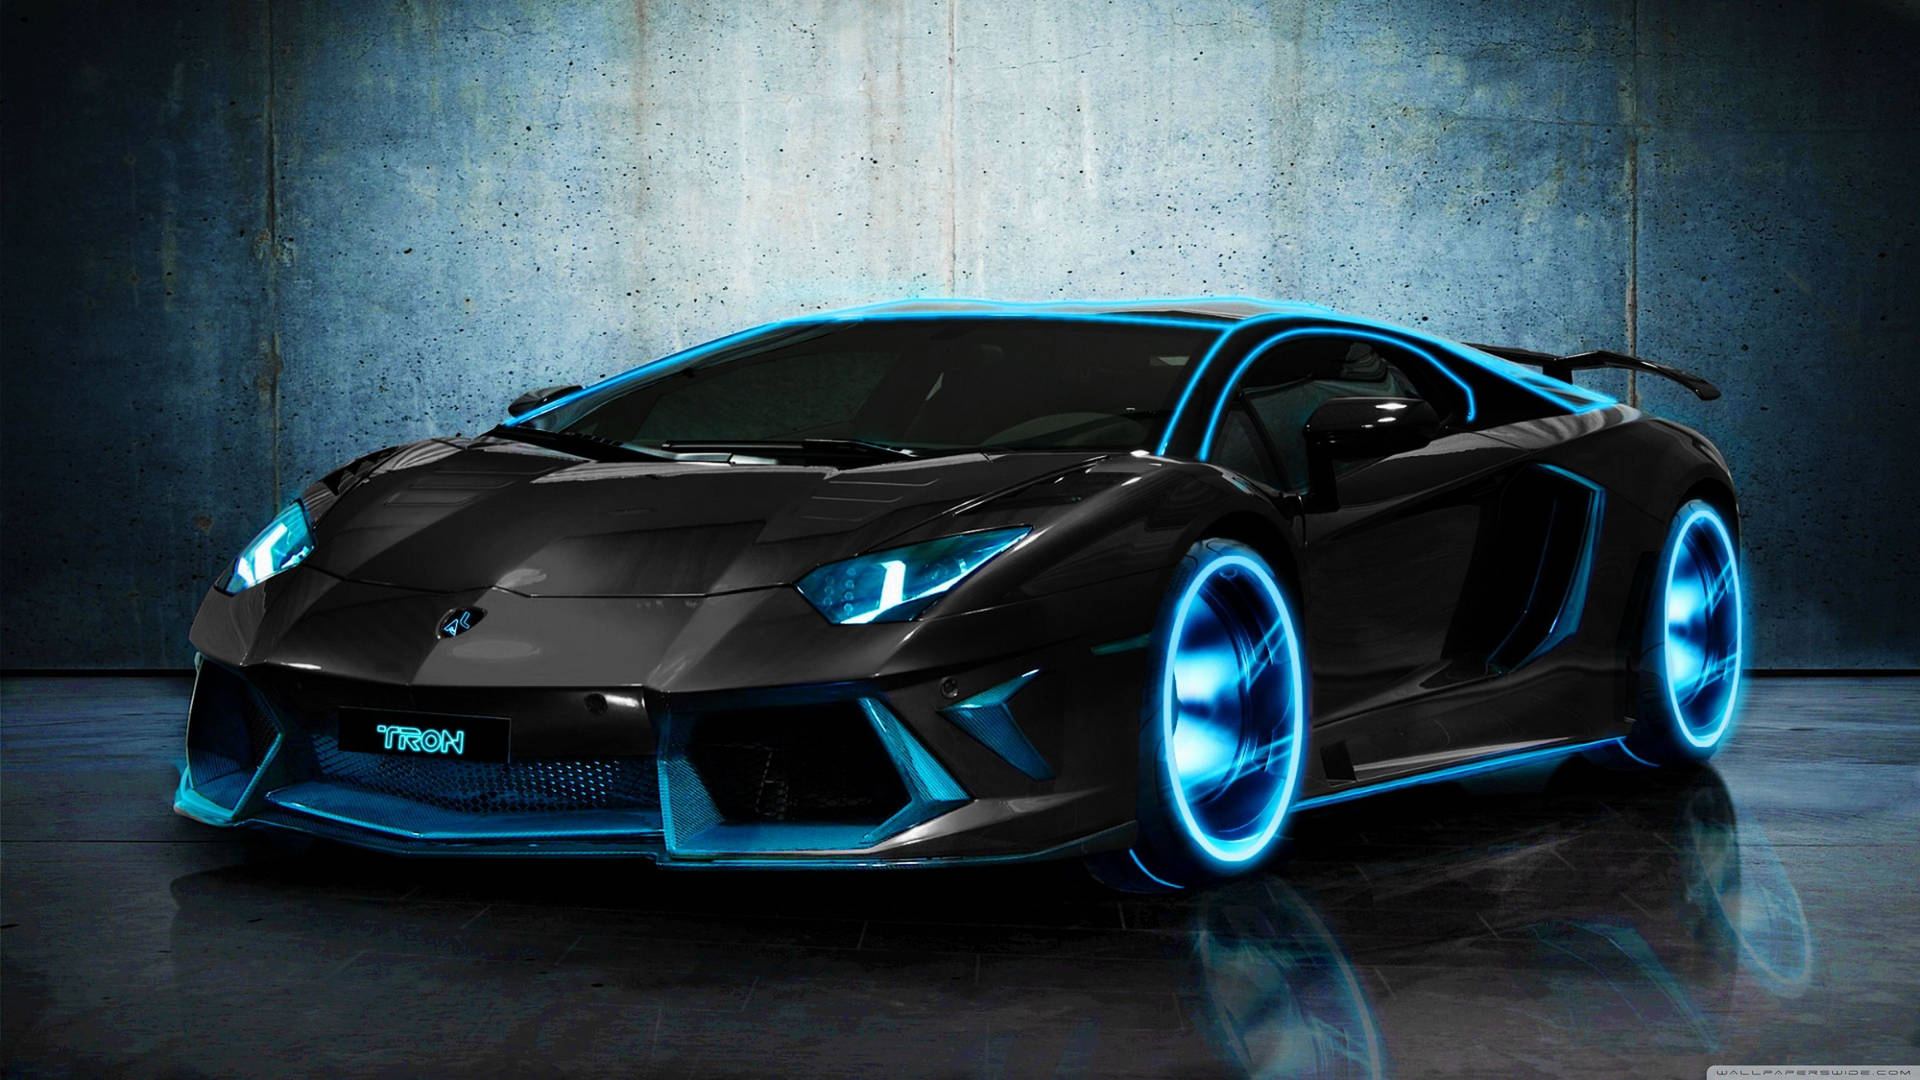 Custom-designed Lamborghini Aventador Supercar Background